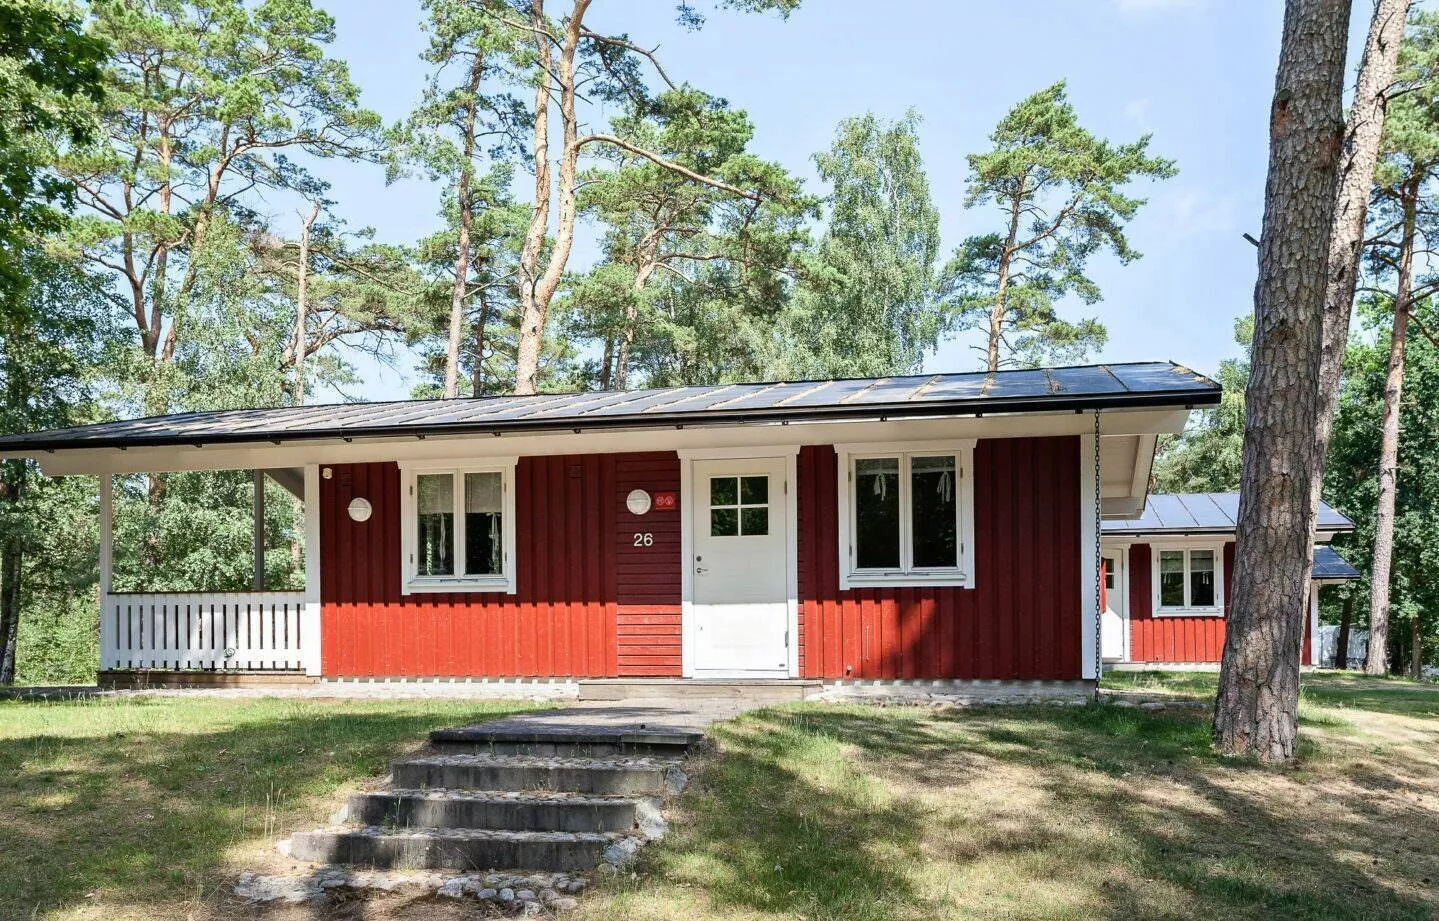 First Camp Torekov-Båstad 